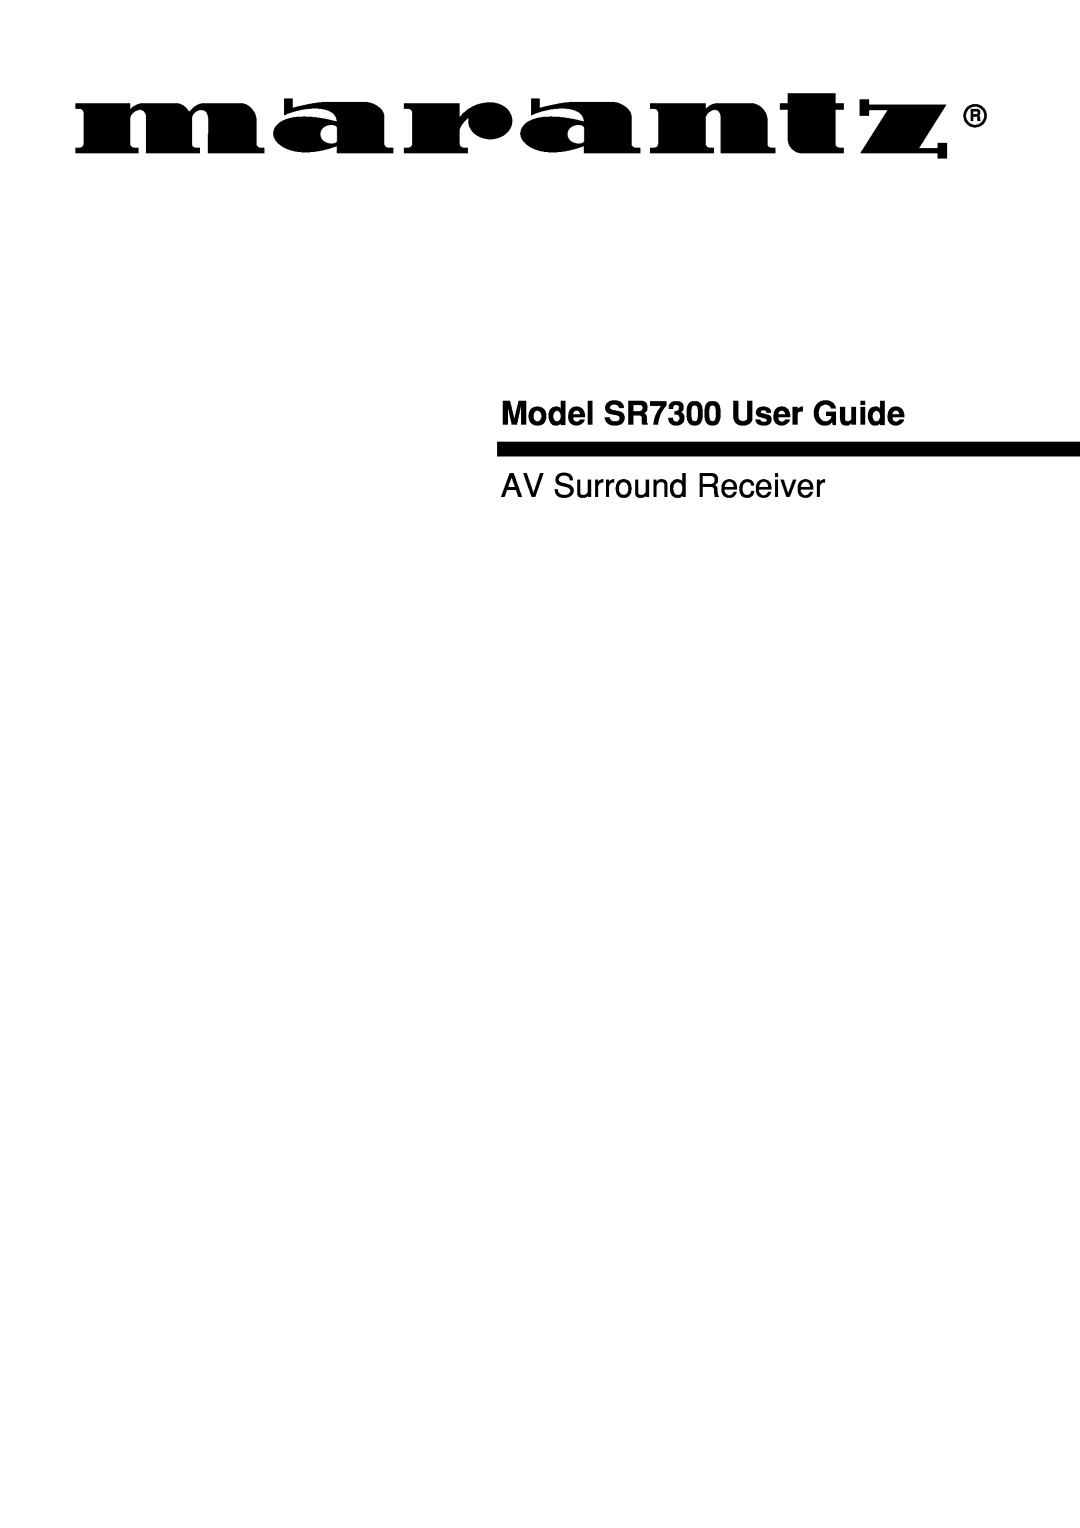 Marantz manual Model SR7300 User Guide, AV Surround Receiver 